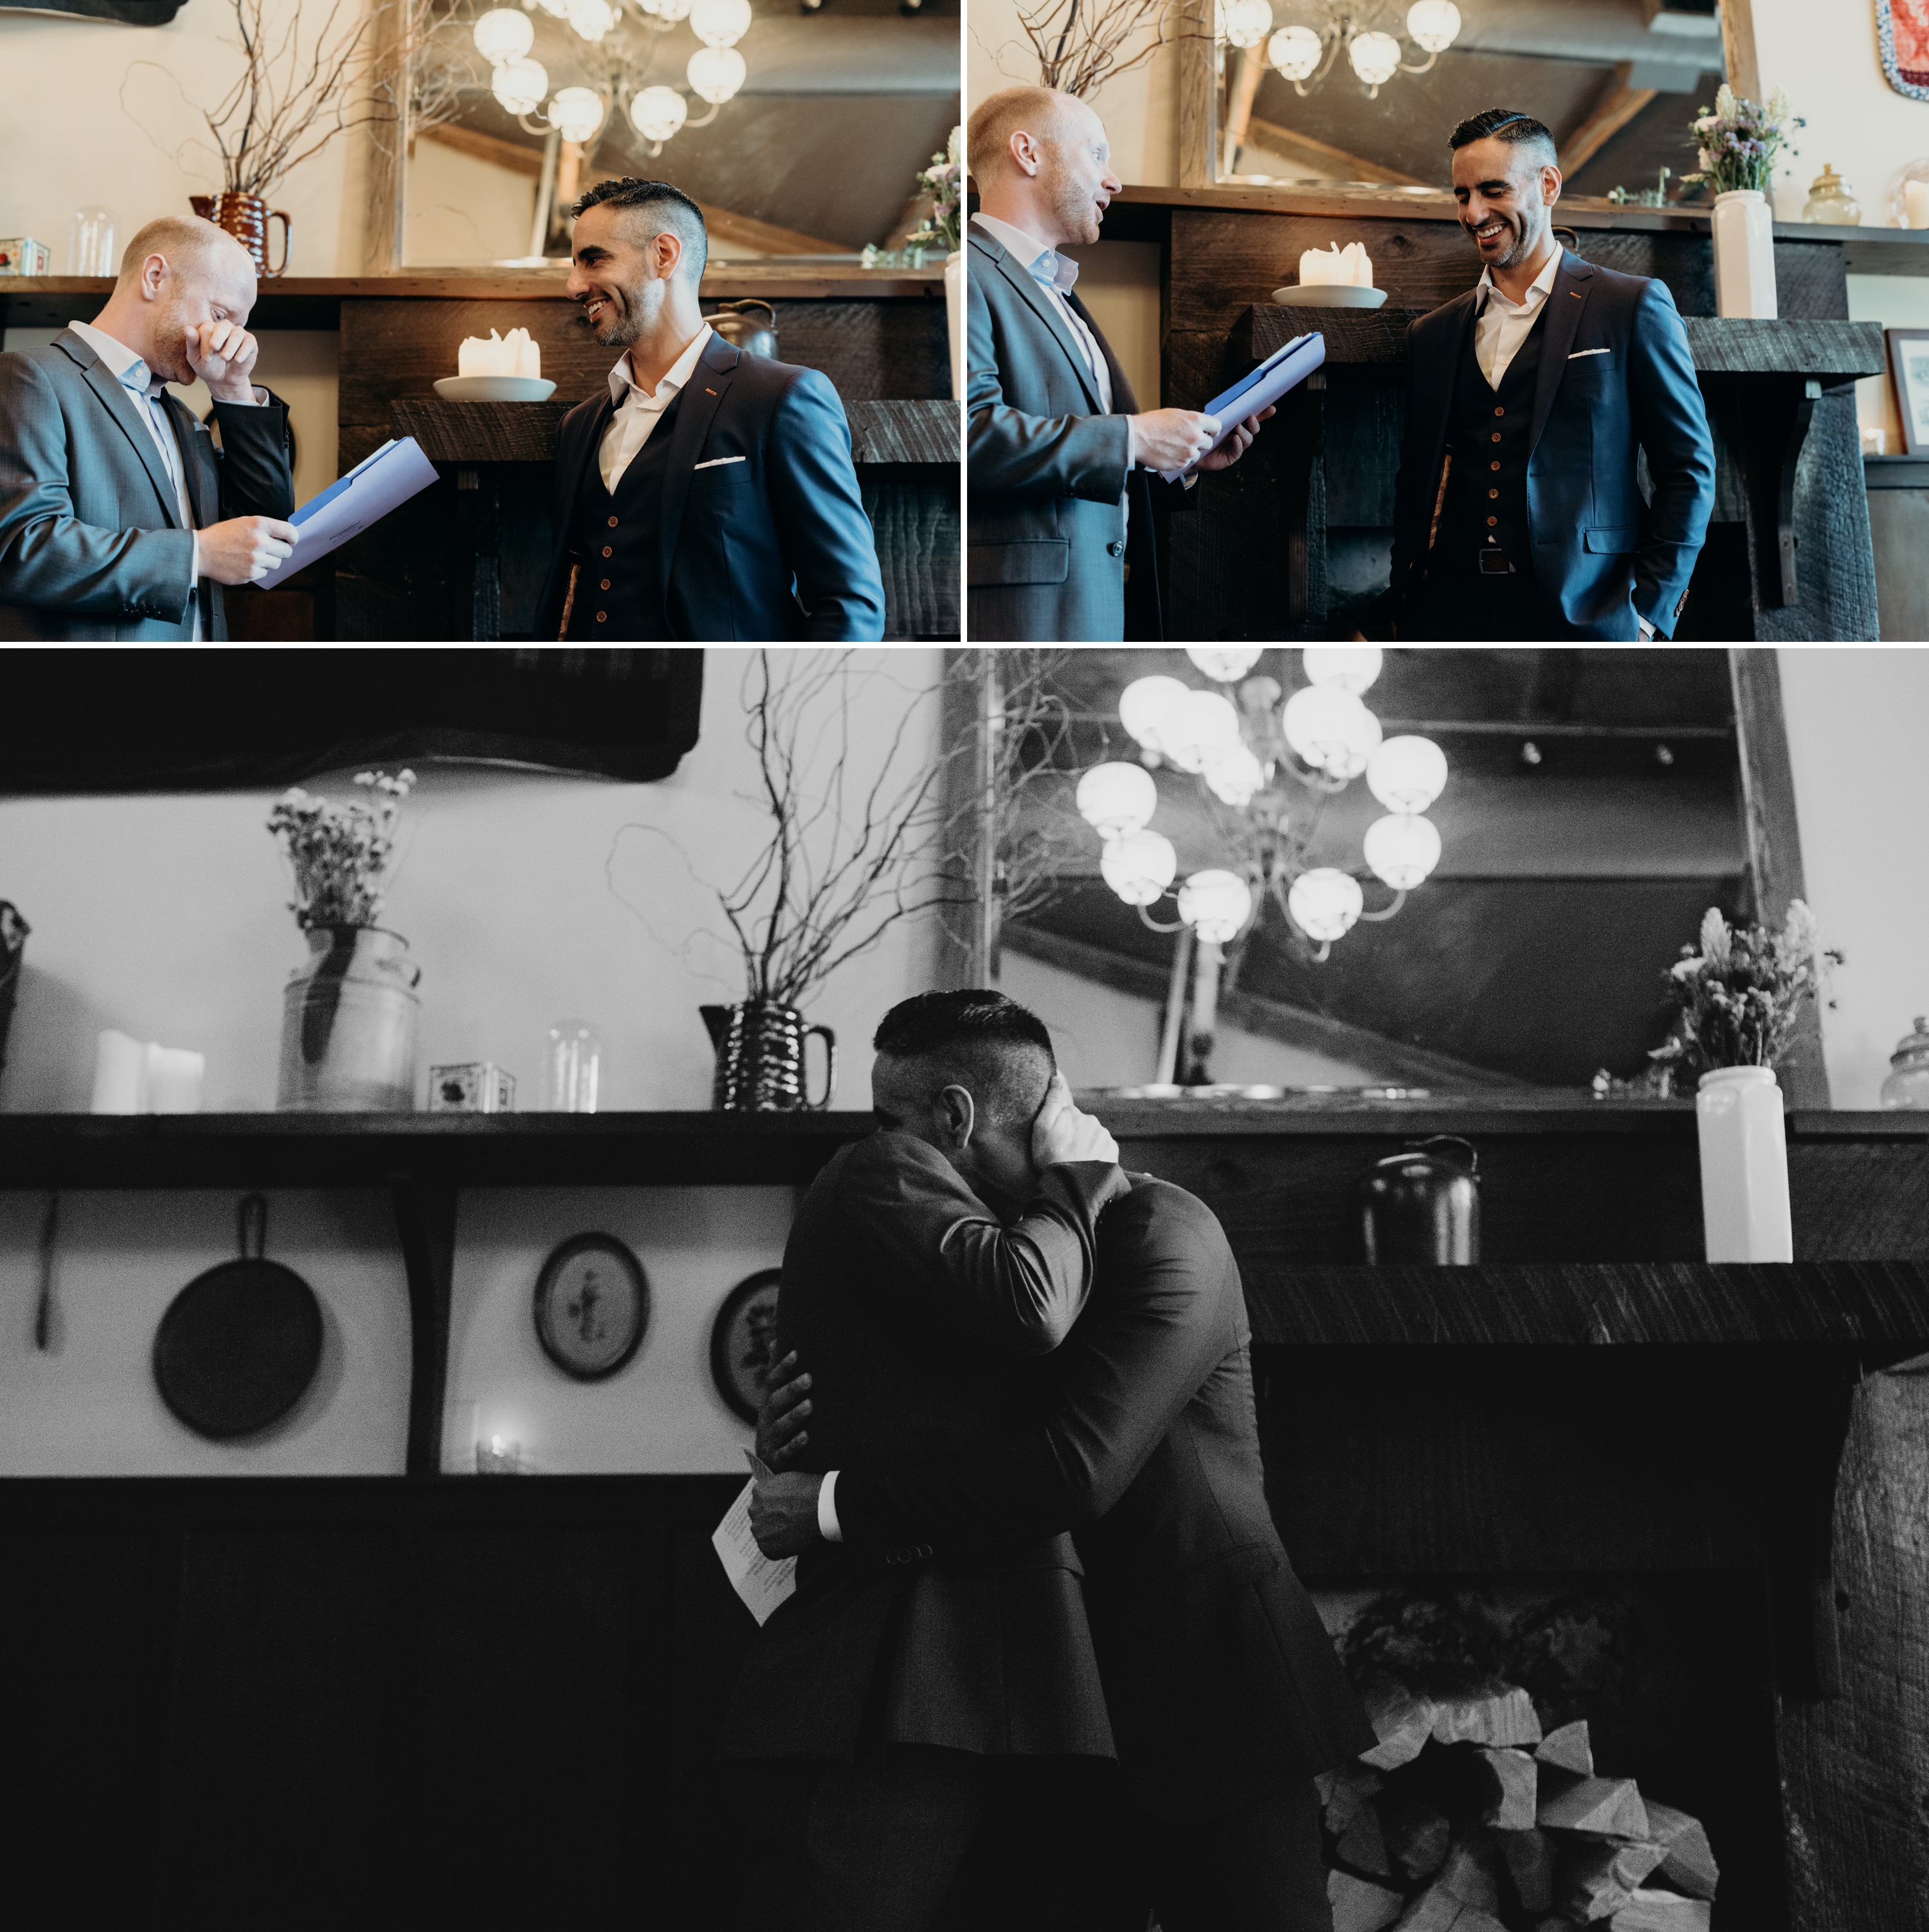 Gay wedding ceremony in Portland, Oregon by Elder Hall wedding photographer Briana Morrison